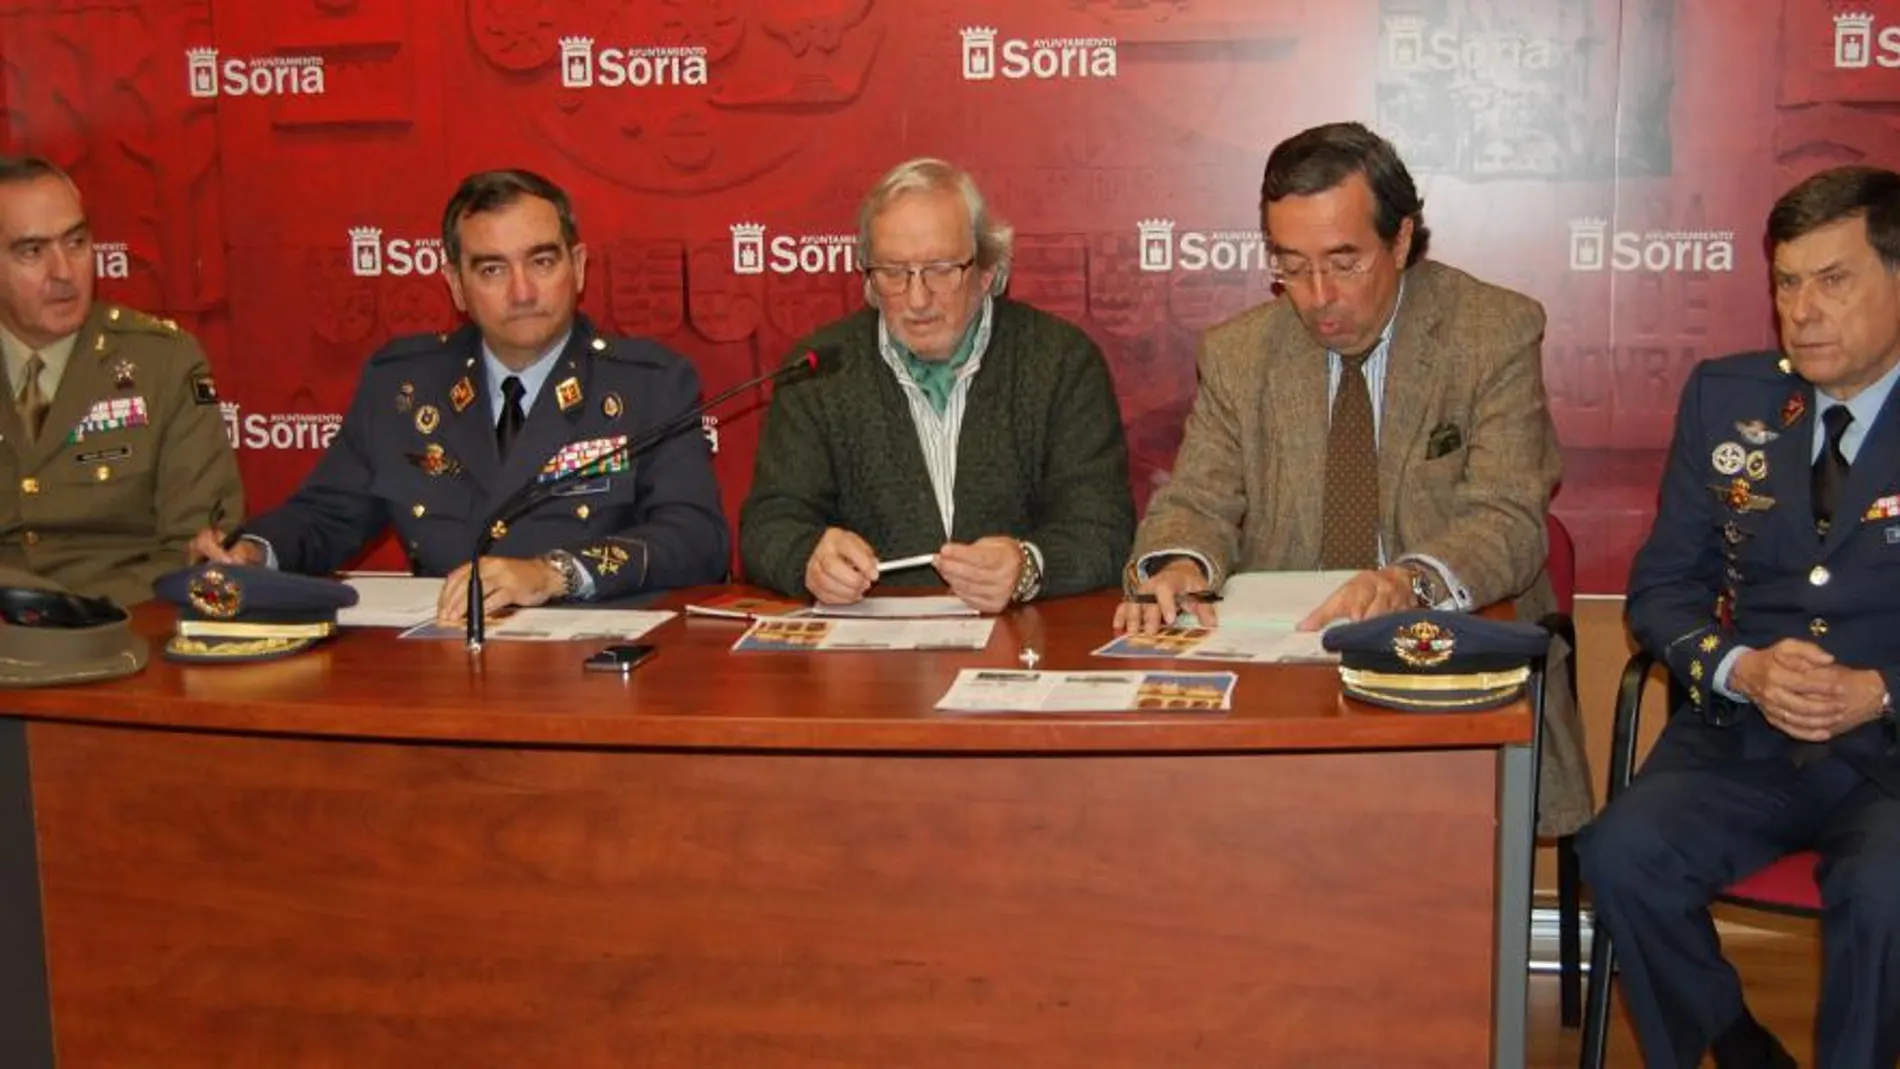 El presidente del Foro Soria 21, Amalio de Marichalar, presenta la exposición junto al general Pablo Gómez Rojo, y el concejal de Cultura, Jesús Bárez, entre otros